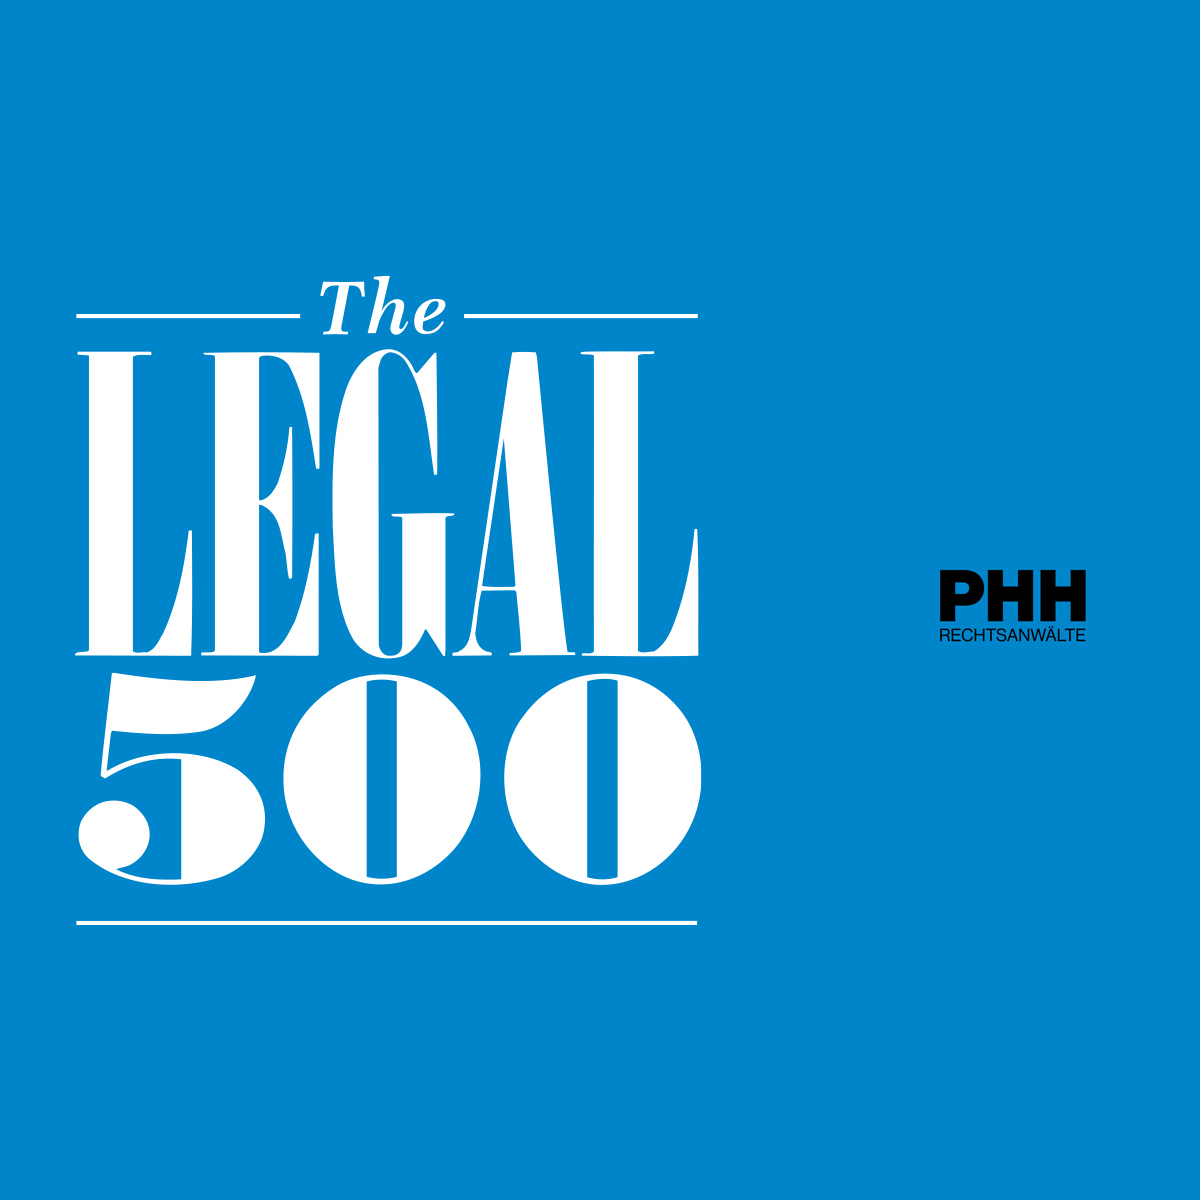 PHH Rechtsanwälte mehrfach top gerankt im aktuellen Legal 500 Ranking